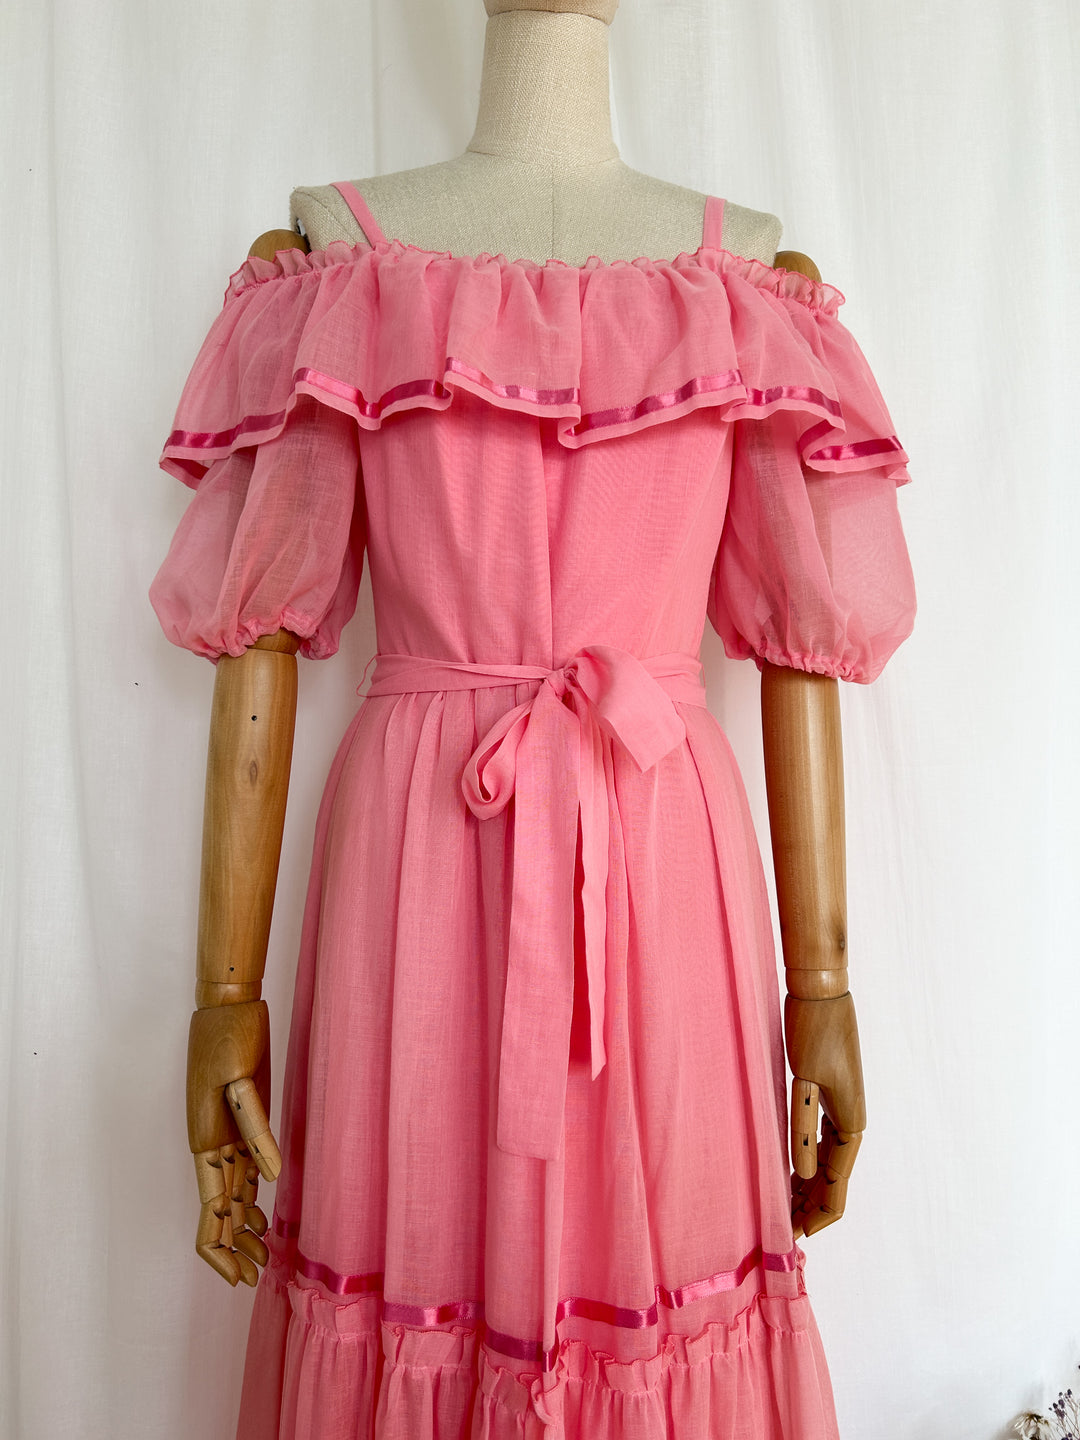 Divine Pink Gauzy Cotton 70s Romantic Dream Dress